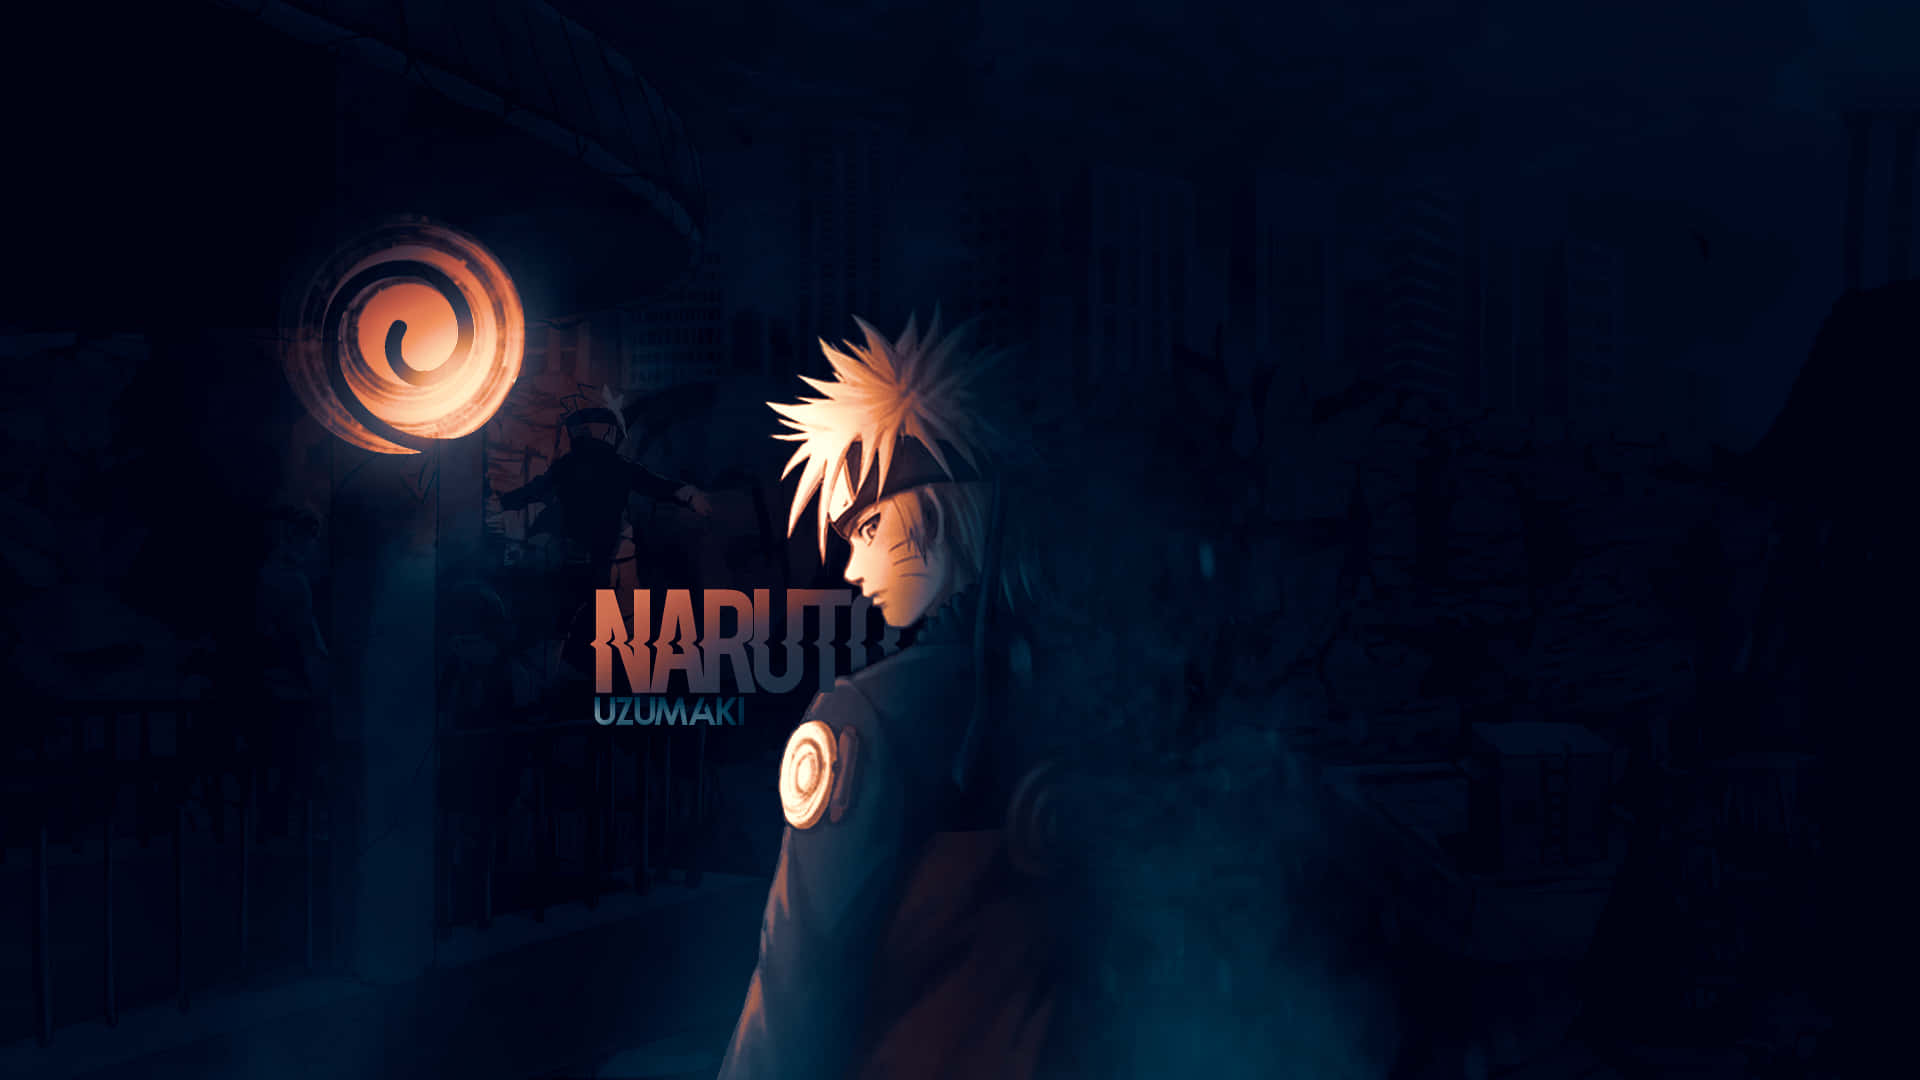 Descargaeste Fondo De Pantalla Genial De Naruto Para Iluminar Tus Pantallas. Fondo de pantalla